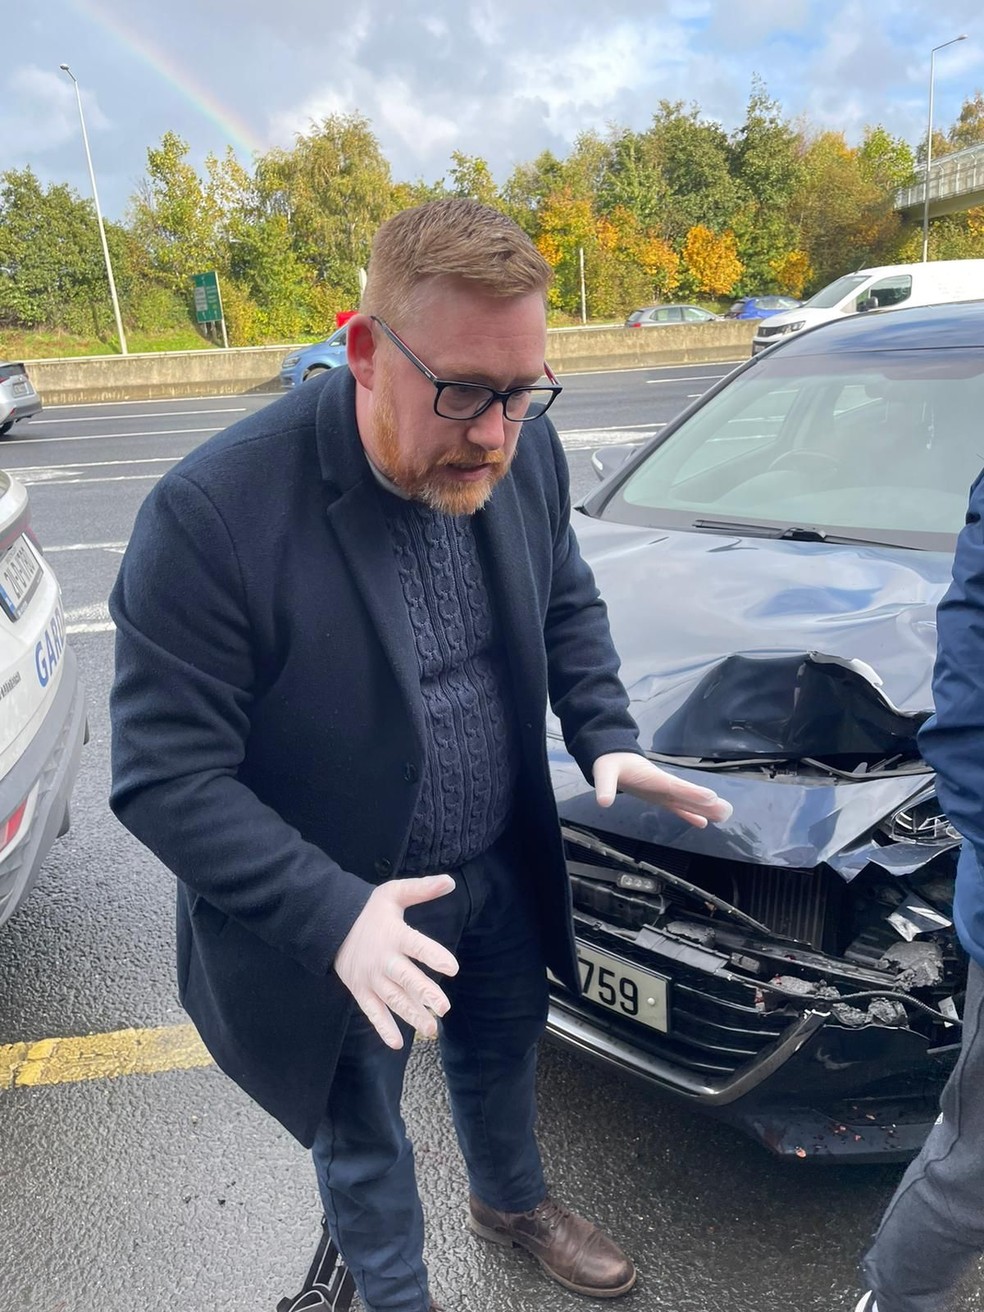 Policial, que segundo Anderson Davi, dirigia o carro que atingiu João na Irlanda. — Foto: Anderson Davi/Arquivo pessoal